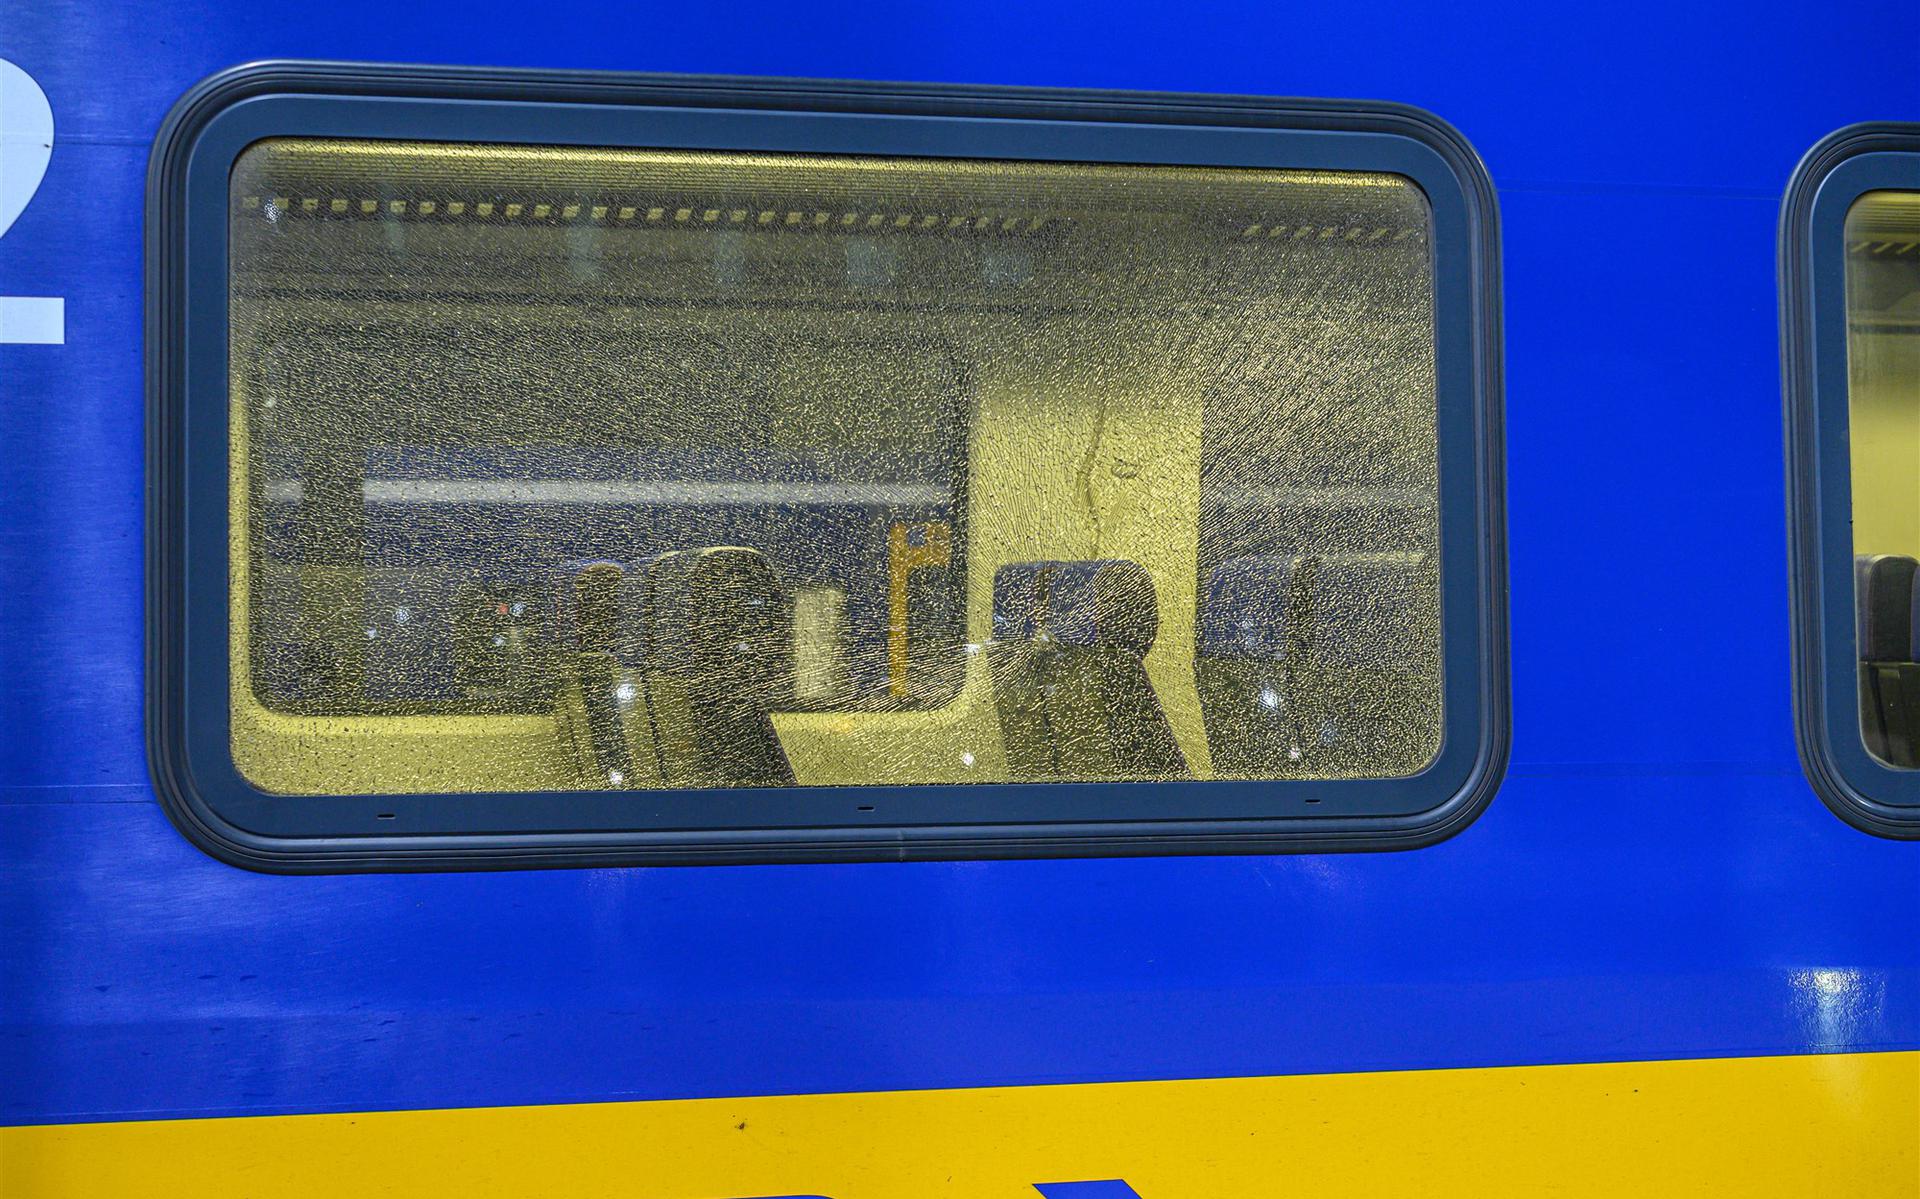 Deze trein werd vorige week beschoten in Noord-Brabant.